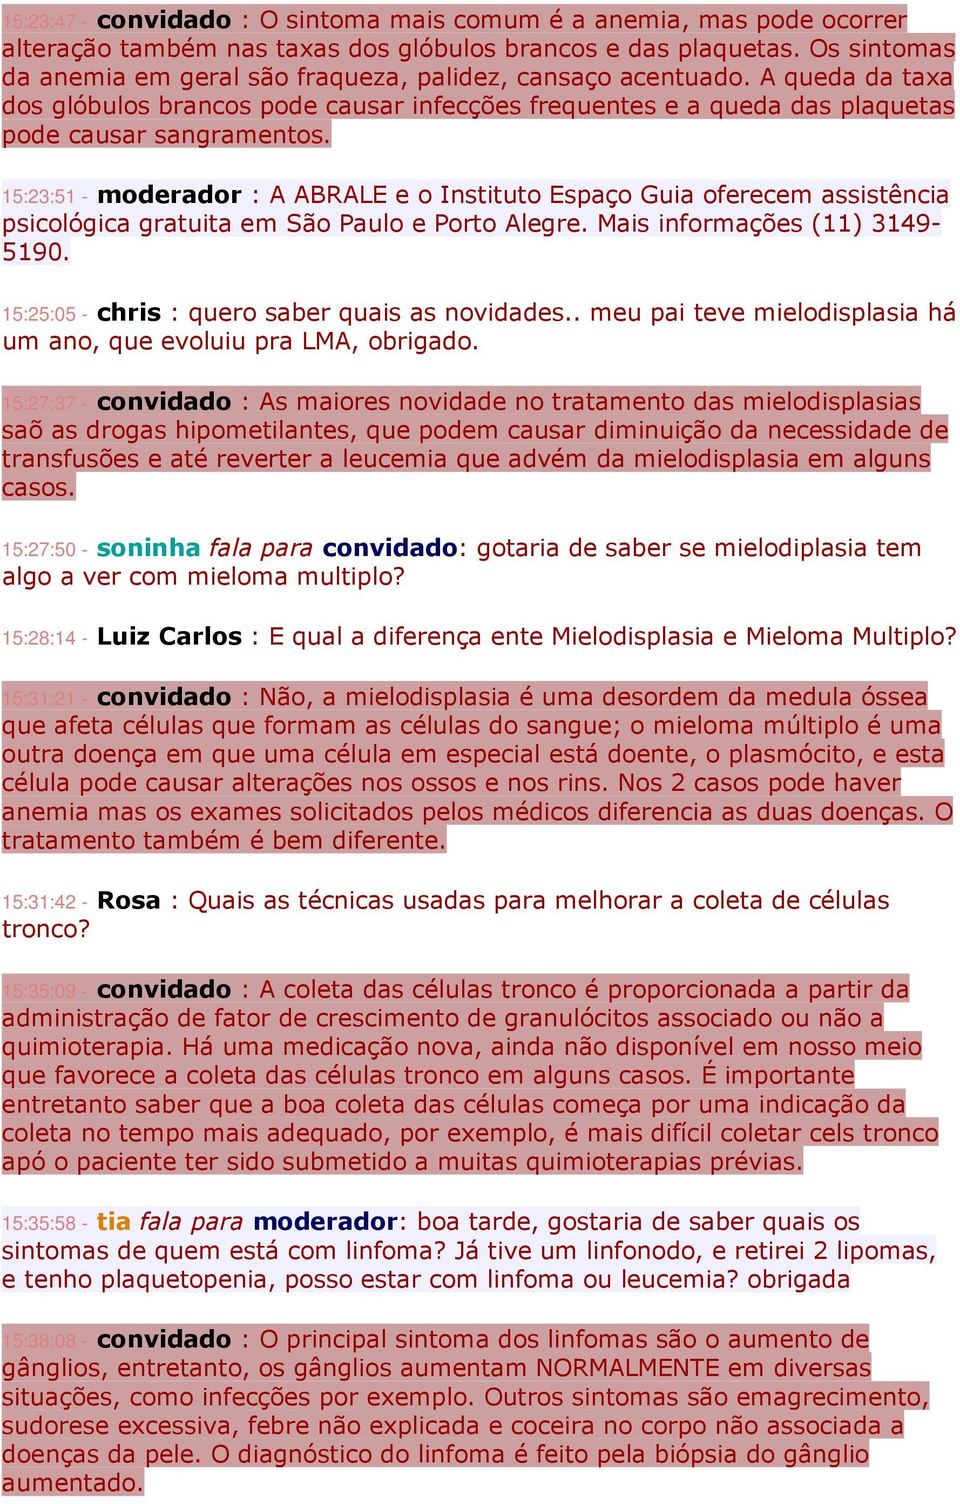 15:23:51 - moderador : A ABRALE e o Instituto Espaço Guia oferecem assistência psicológica gratuita em São Paulo e Porto Alegre. Mais informações (11) 3149-5190.